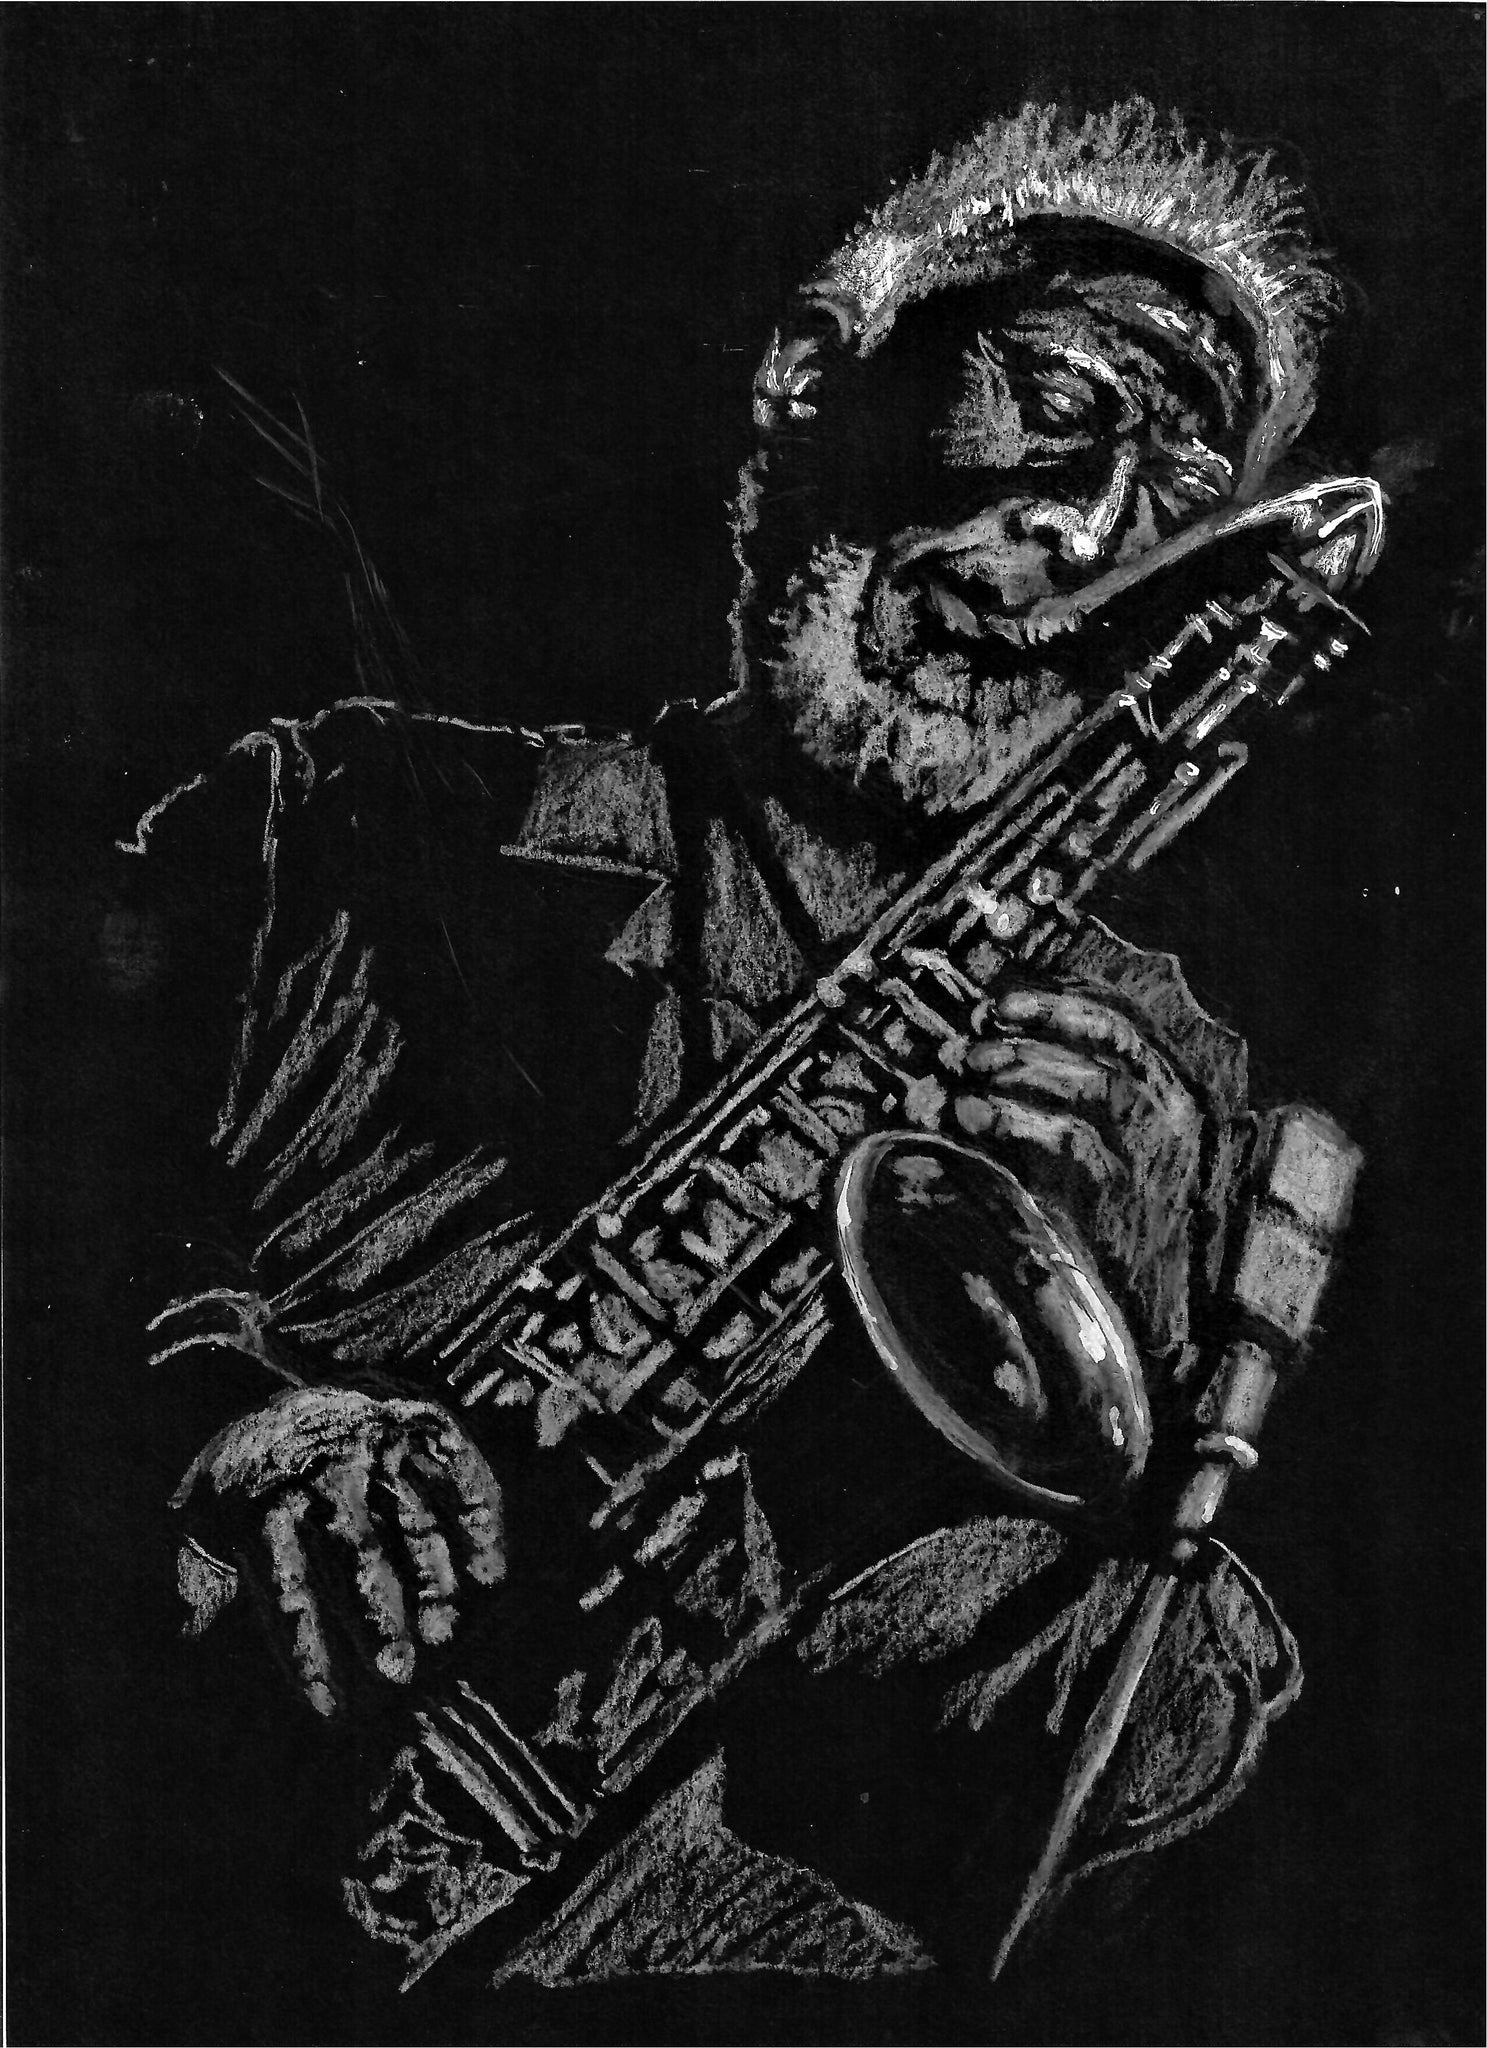 Musician - Old Jazz Saxophone Player, New Orleans Jazz Artist